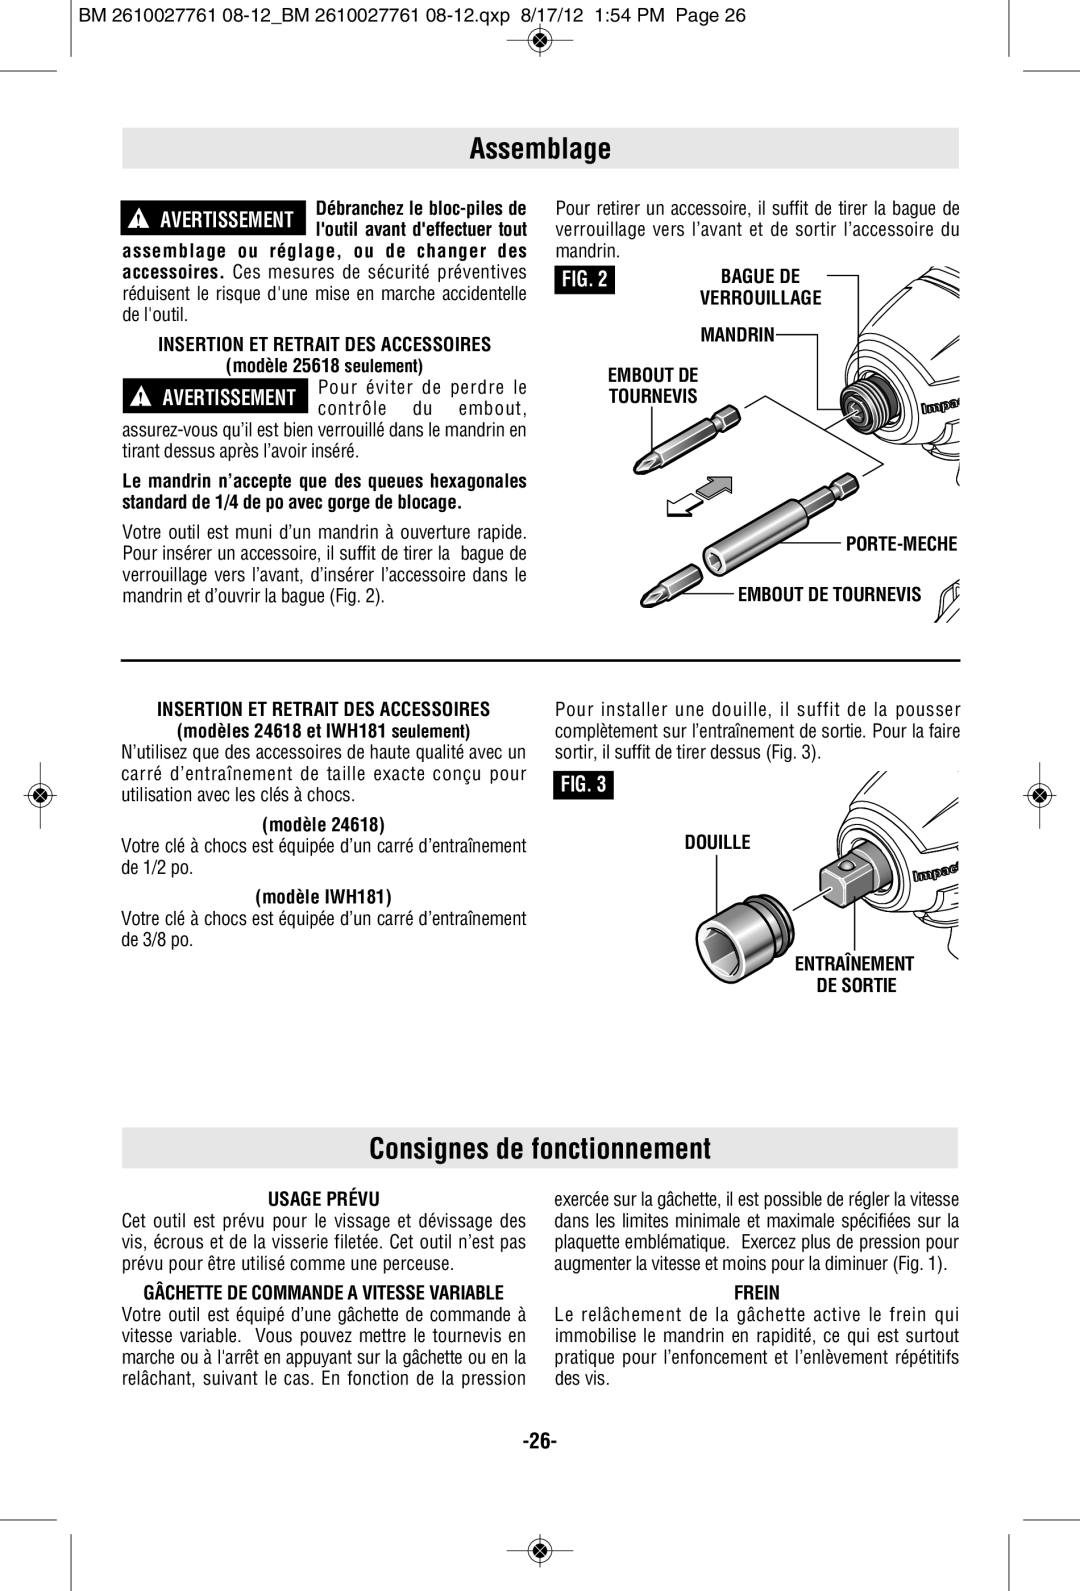 Bosch Power Tools 25618-02 Assemblage, Consignes de fonctionnement, Porte-Meche Embout De Tournevis, modèle, Frein 